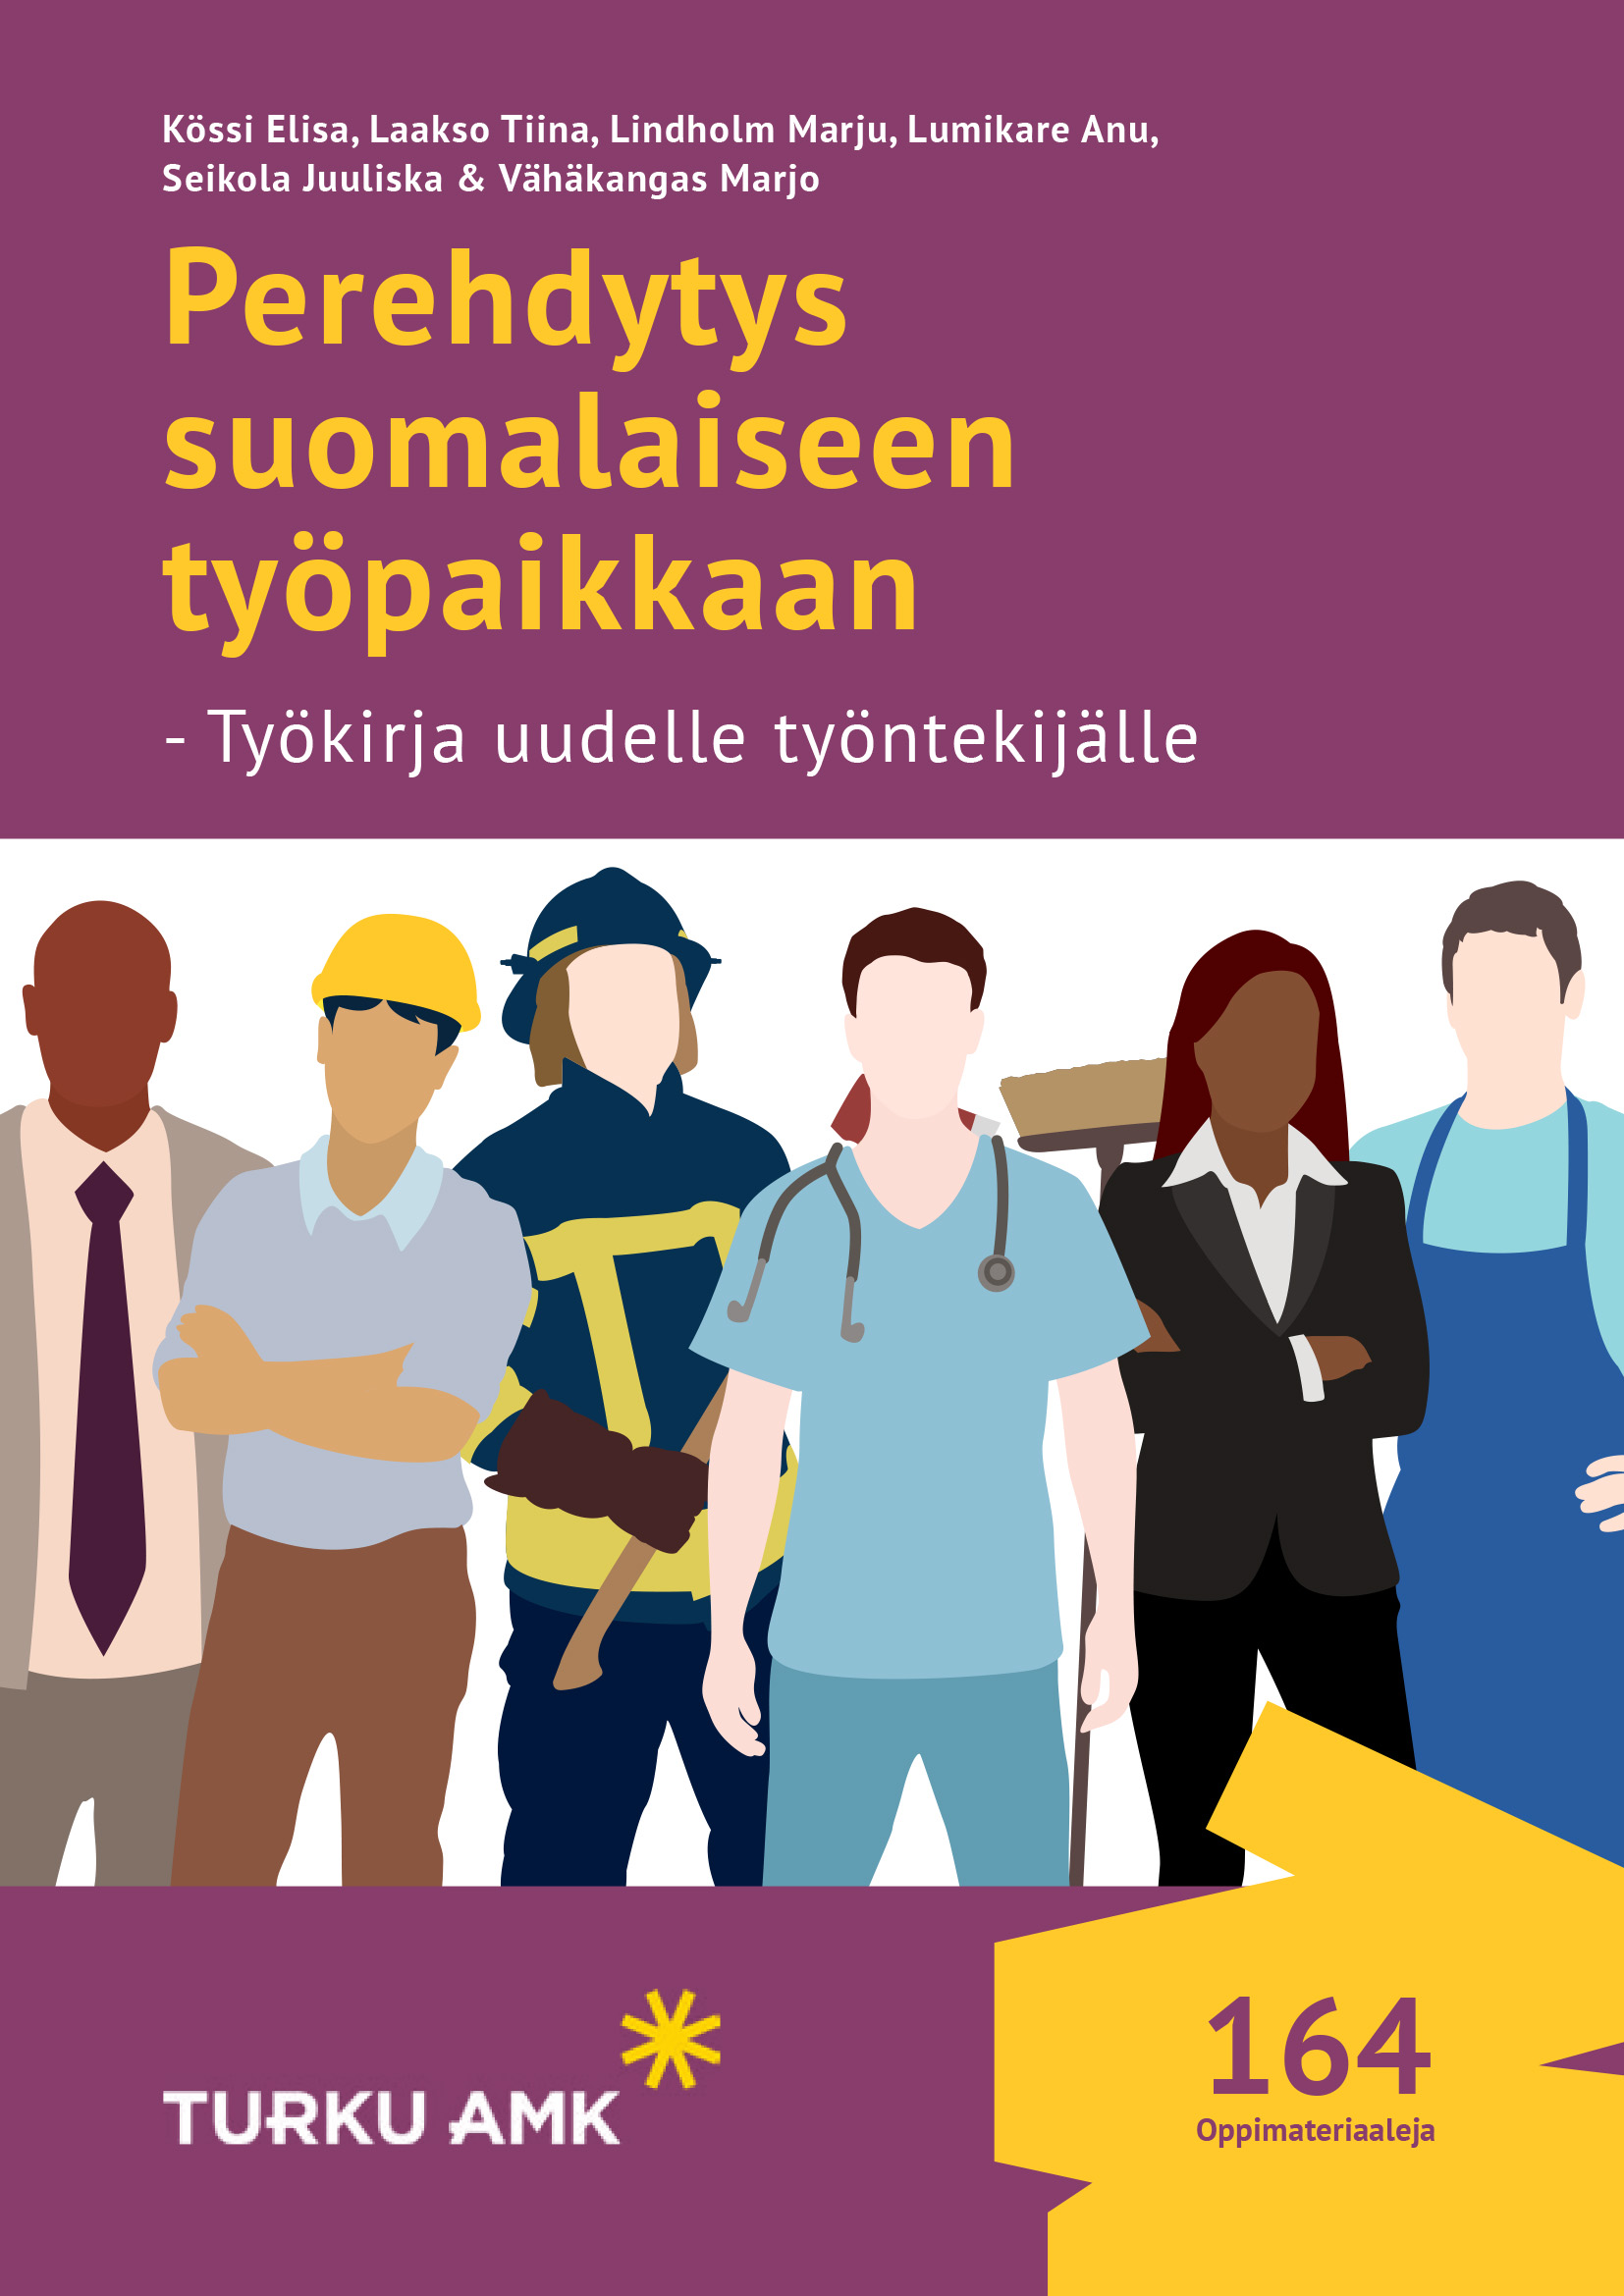 Perehdytys suomalaiseen työpaikkaan - Työkirja uudelle työntekijälle